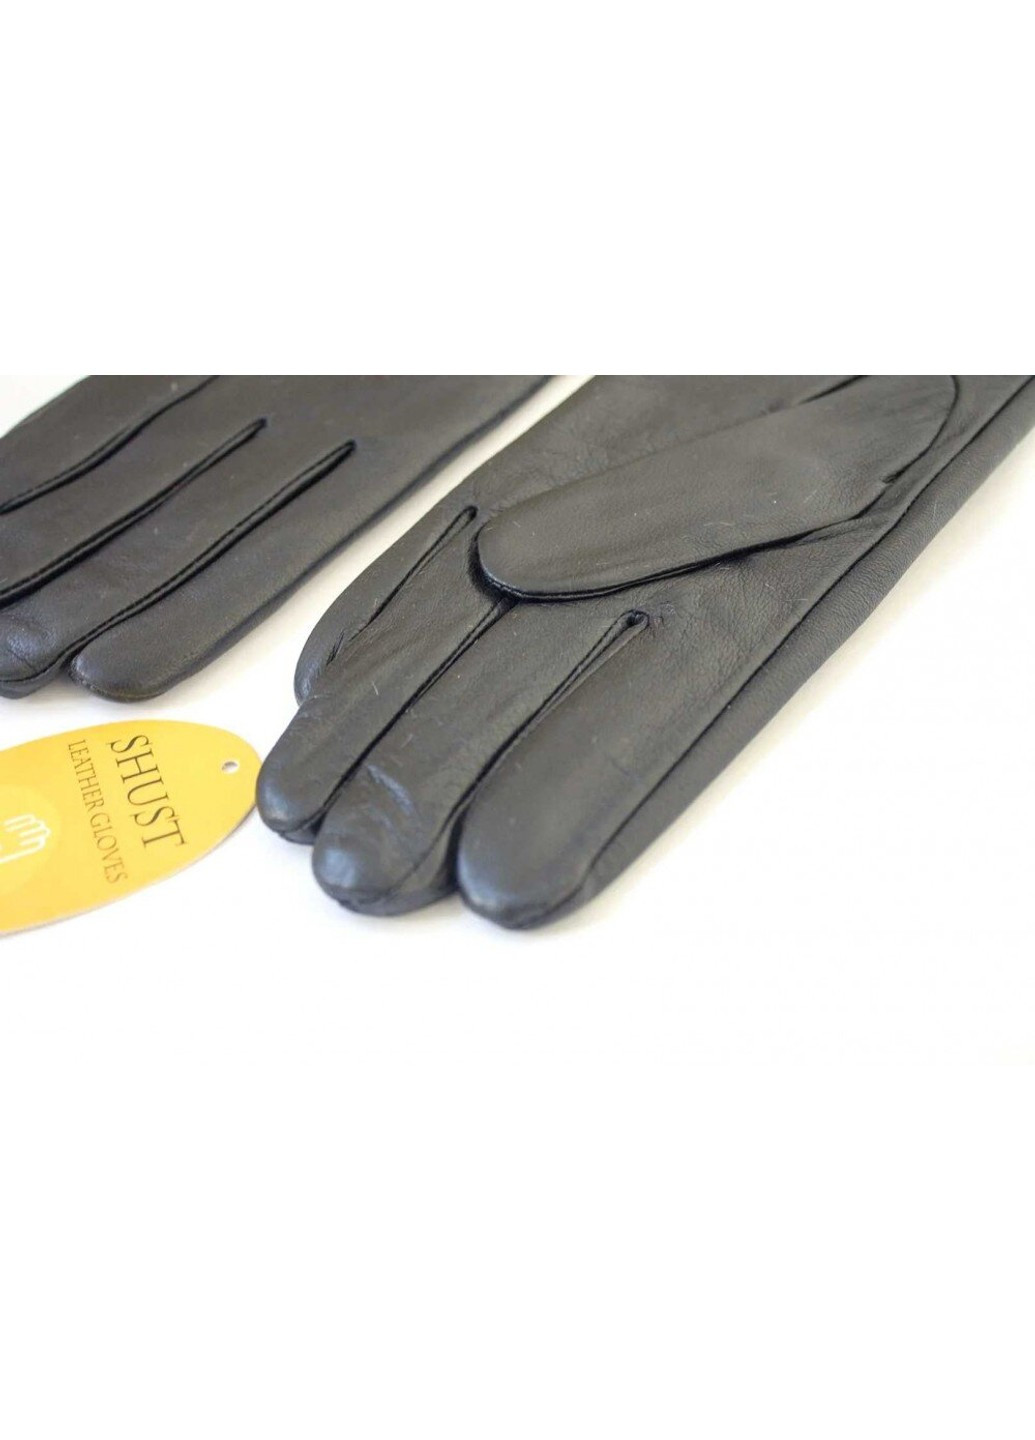 Женские кожаные перчатки чёрные 369s1 S Shust Gloves (261486925)